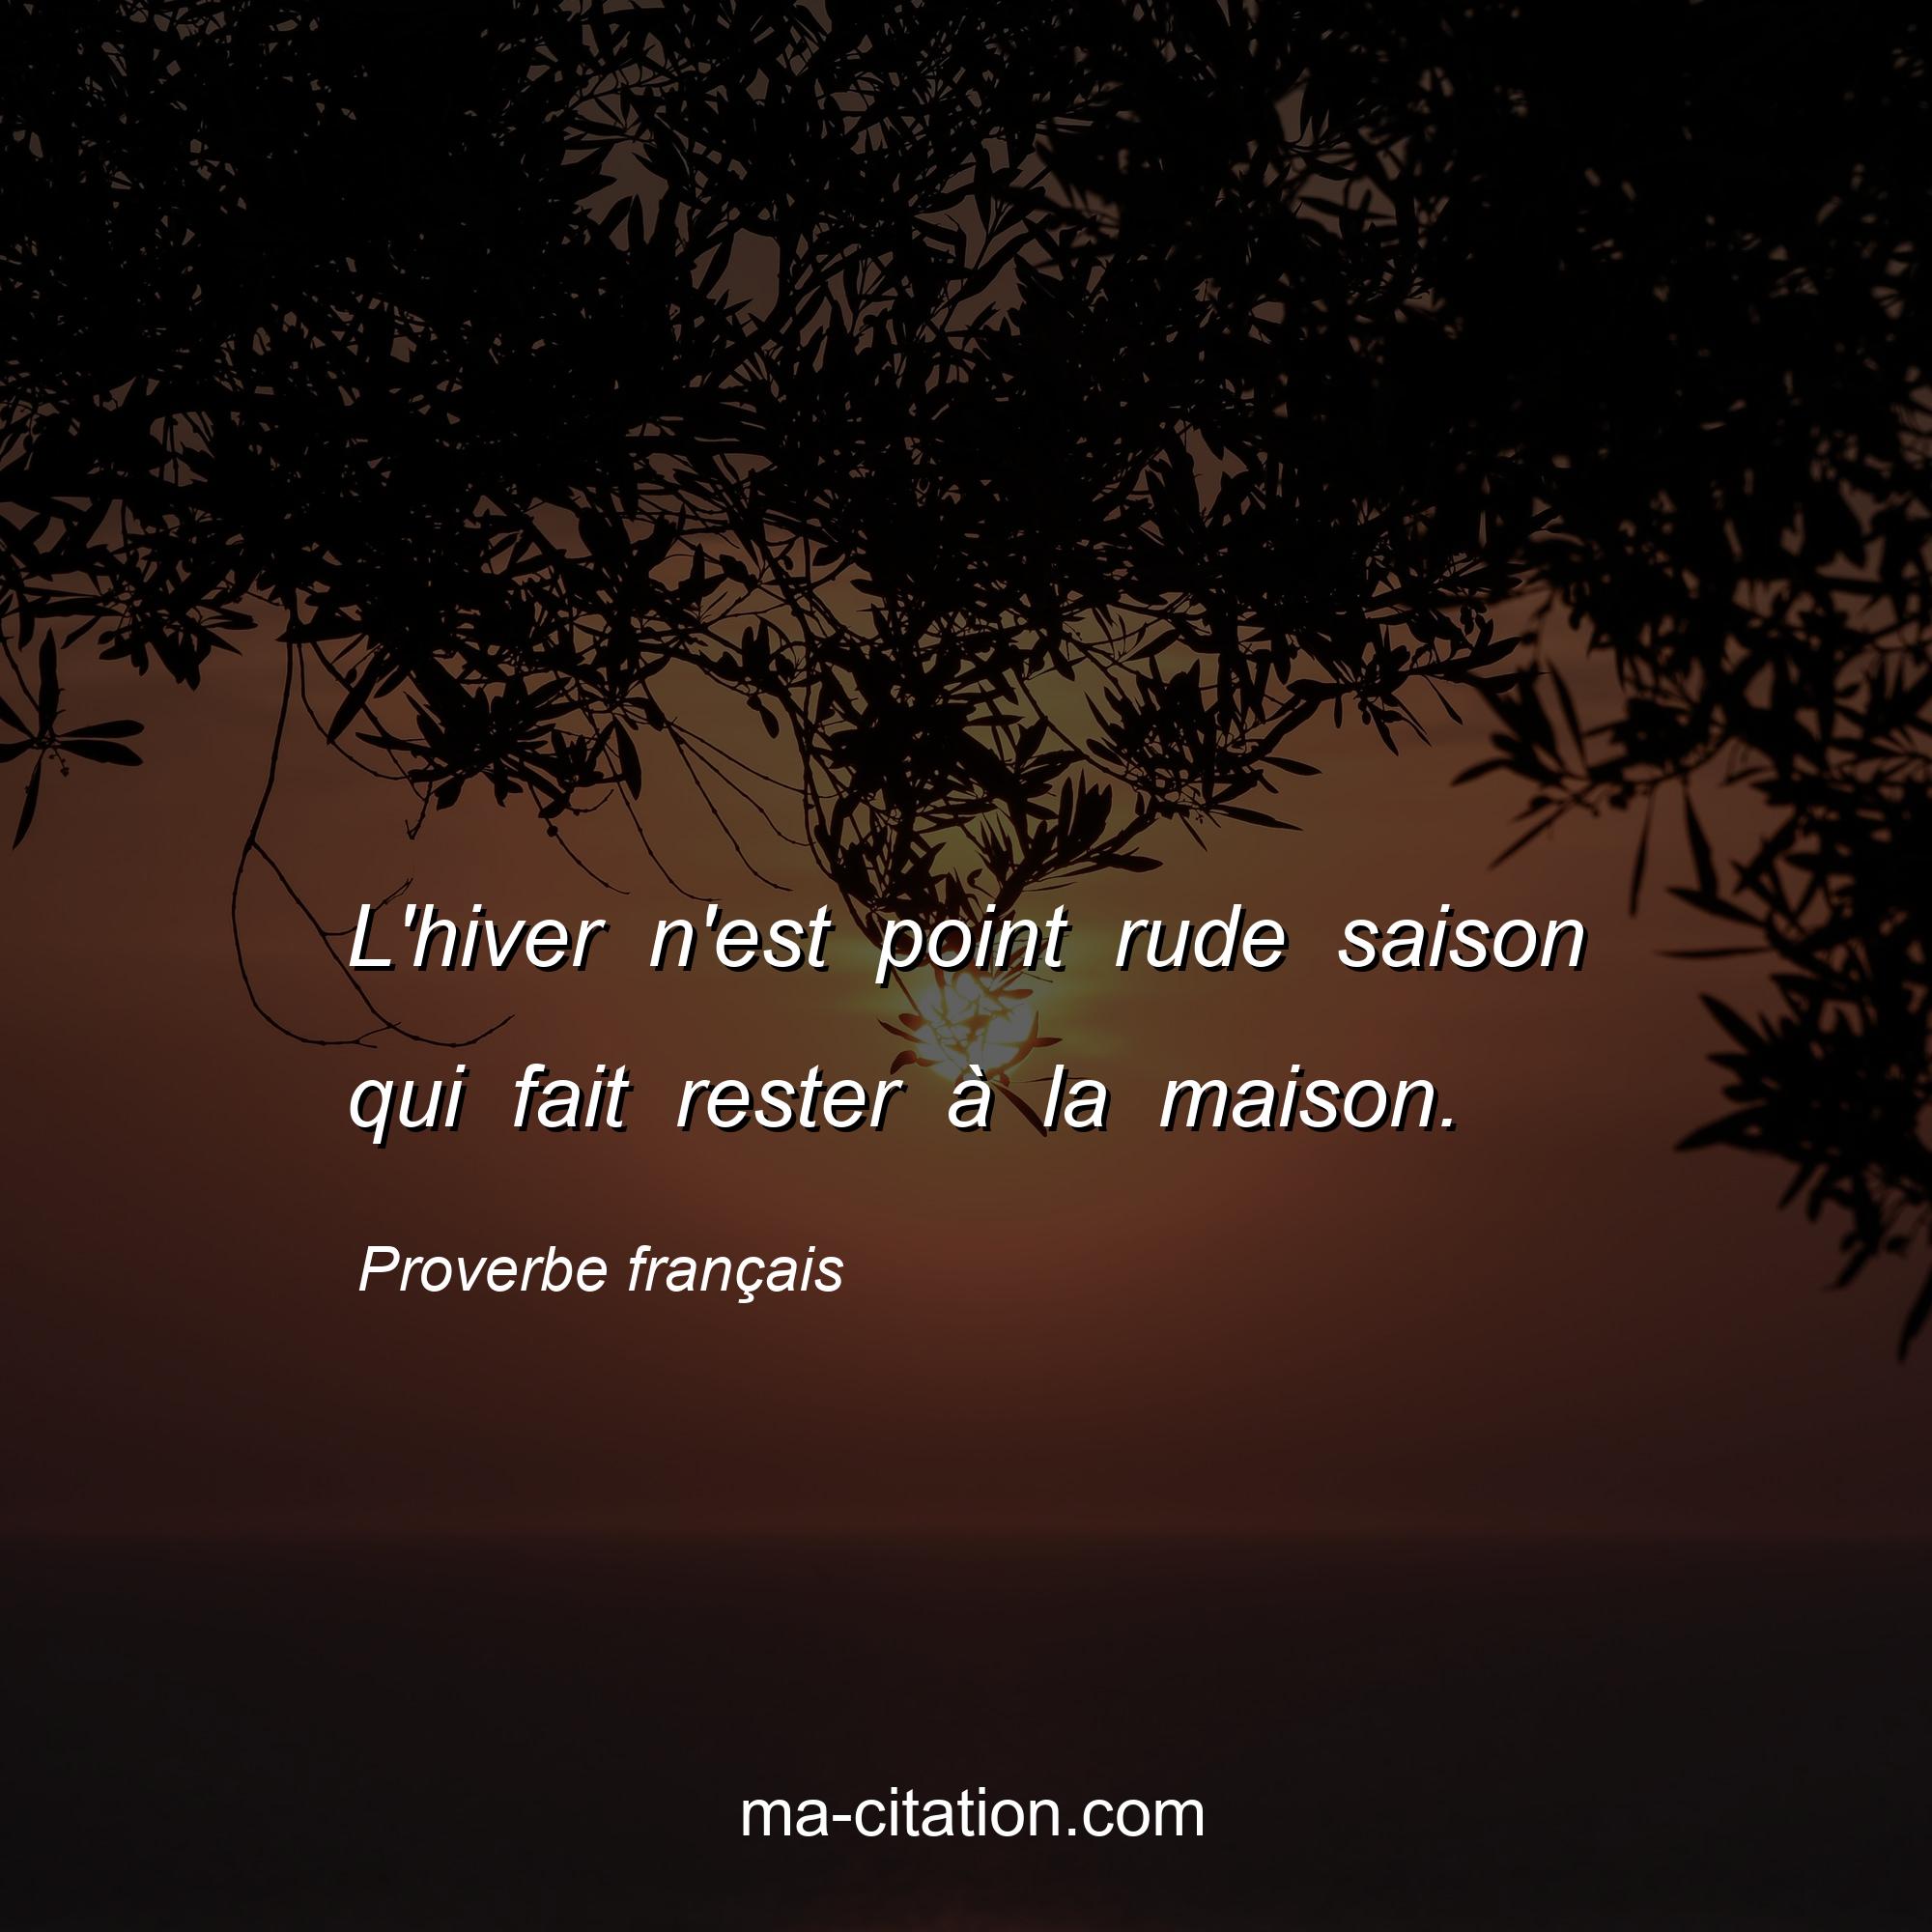 Proverbe français : L'hiver n'est point rude saison qui fait rester à la maison.